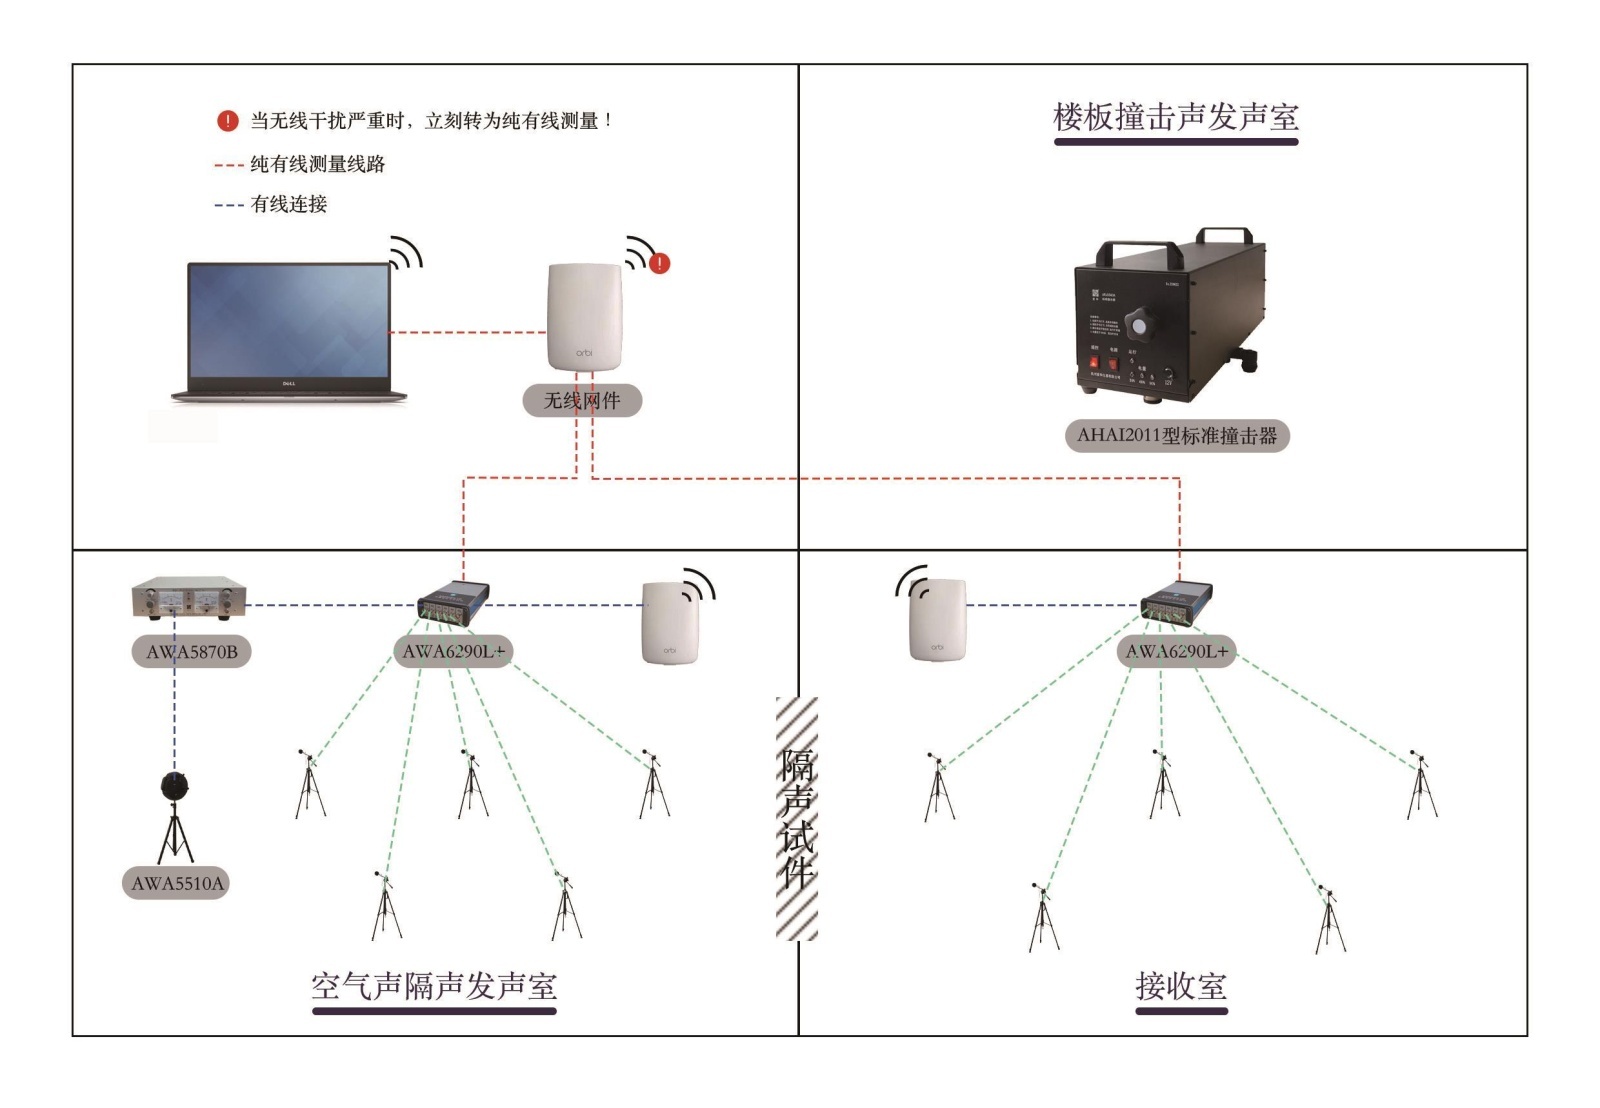 AWA6290建筑声学测量系统的图片